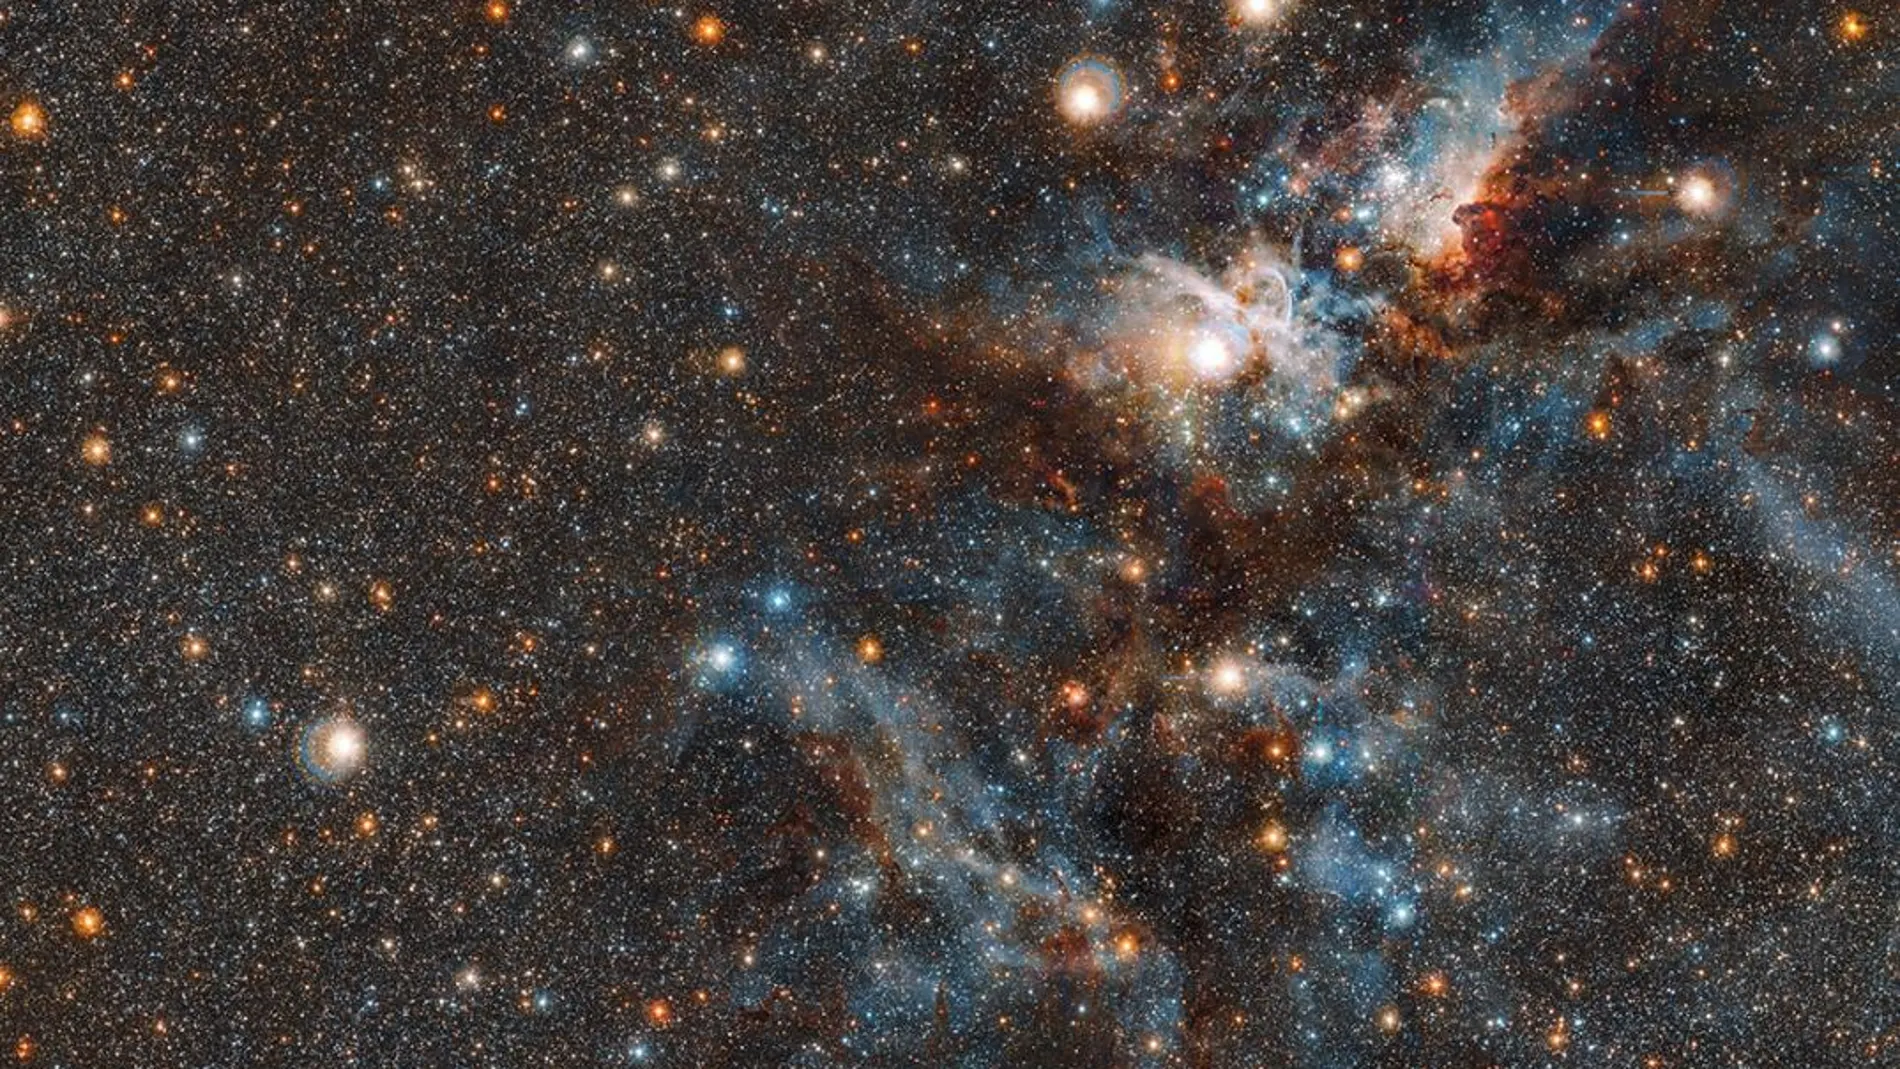 Esta espectacular imagen de la nebulosa Carina revela, como nunca antes, la dinámica nube de materia interestelar y gas y polvo apenas expandidos. Crédito: ESO/J. Emerson/M. Irwin/J. Lewis